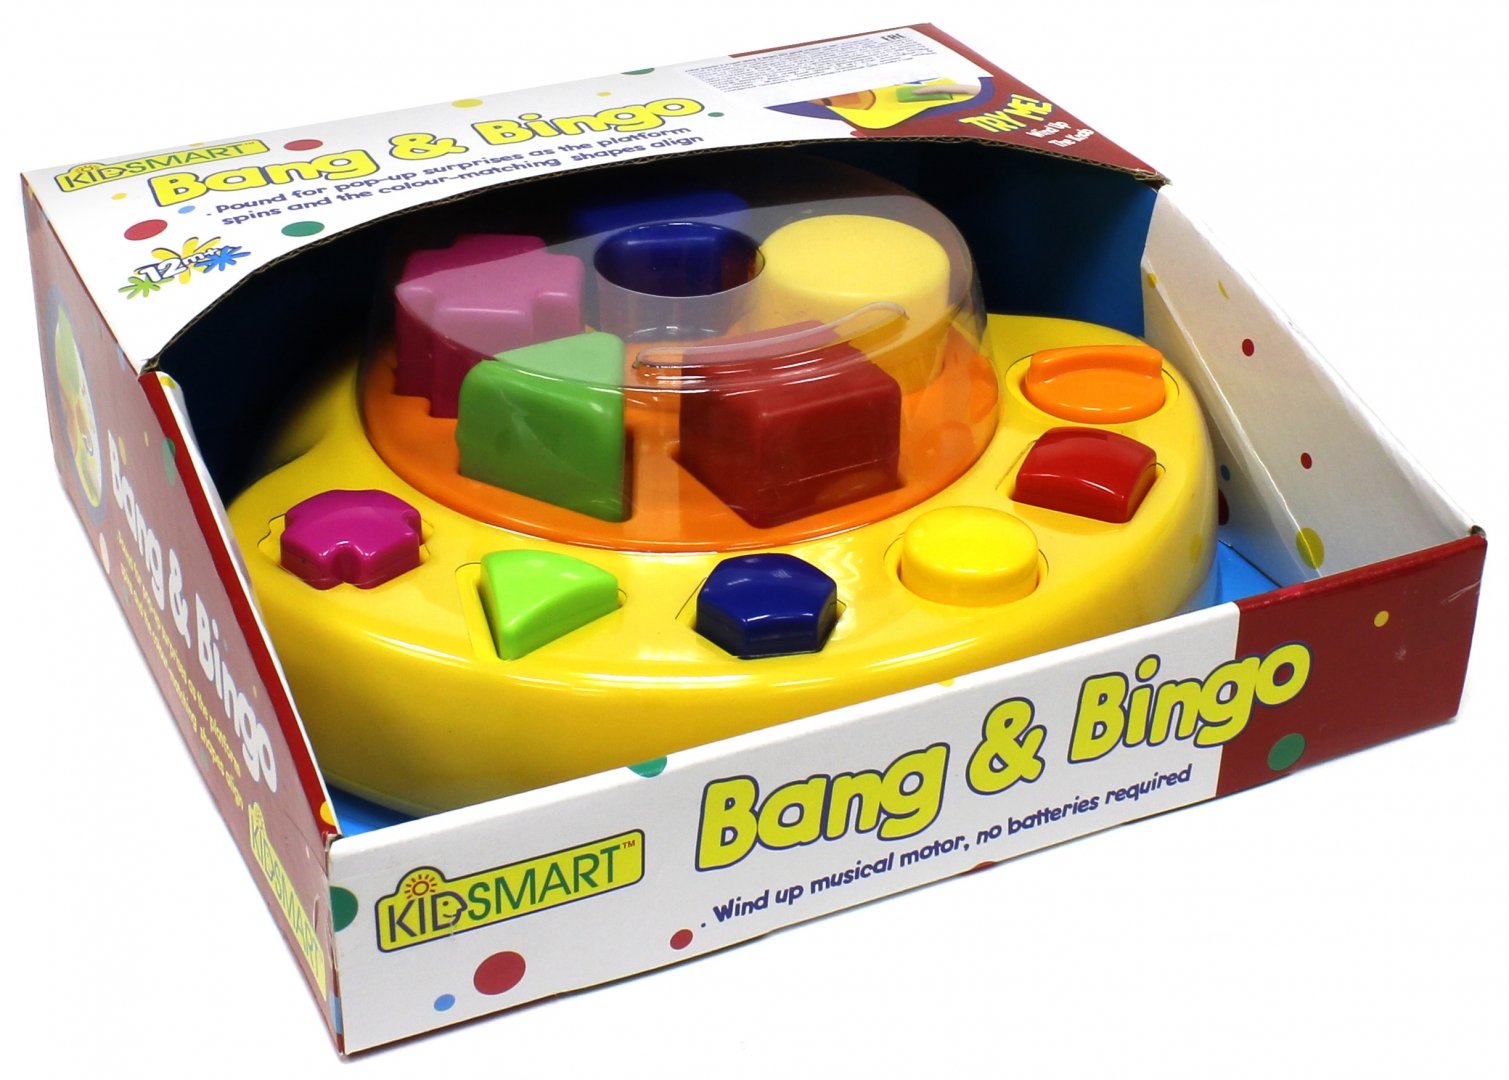 Иллюстрация 1 из 2 для Нажми и угадай Bang & Bingo (21010) | Лабиринт - игрушки. Источник: Лабиринт